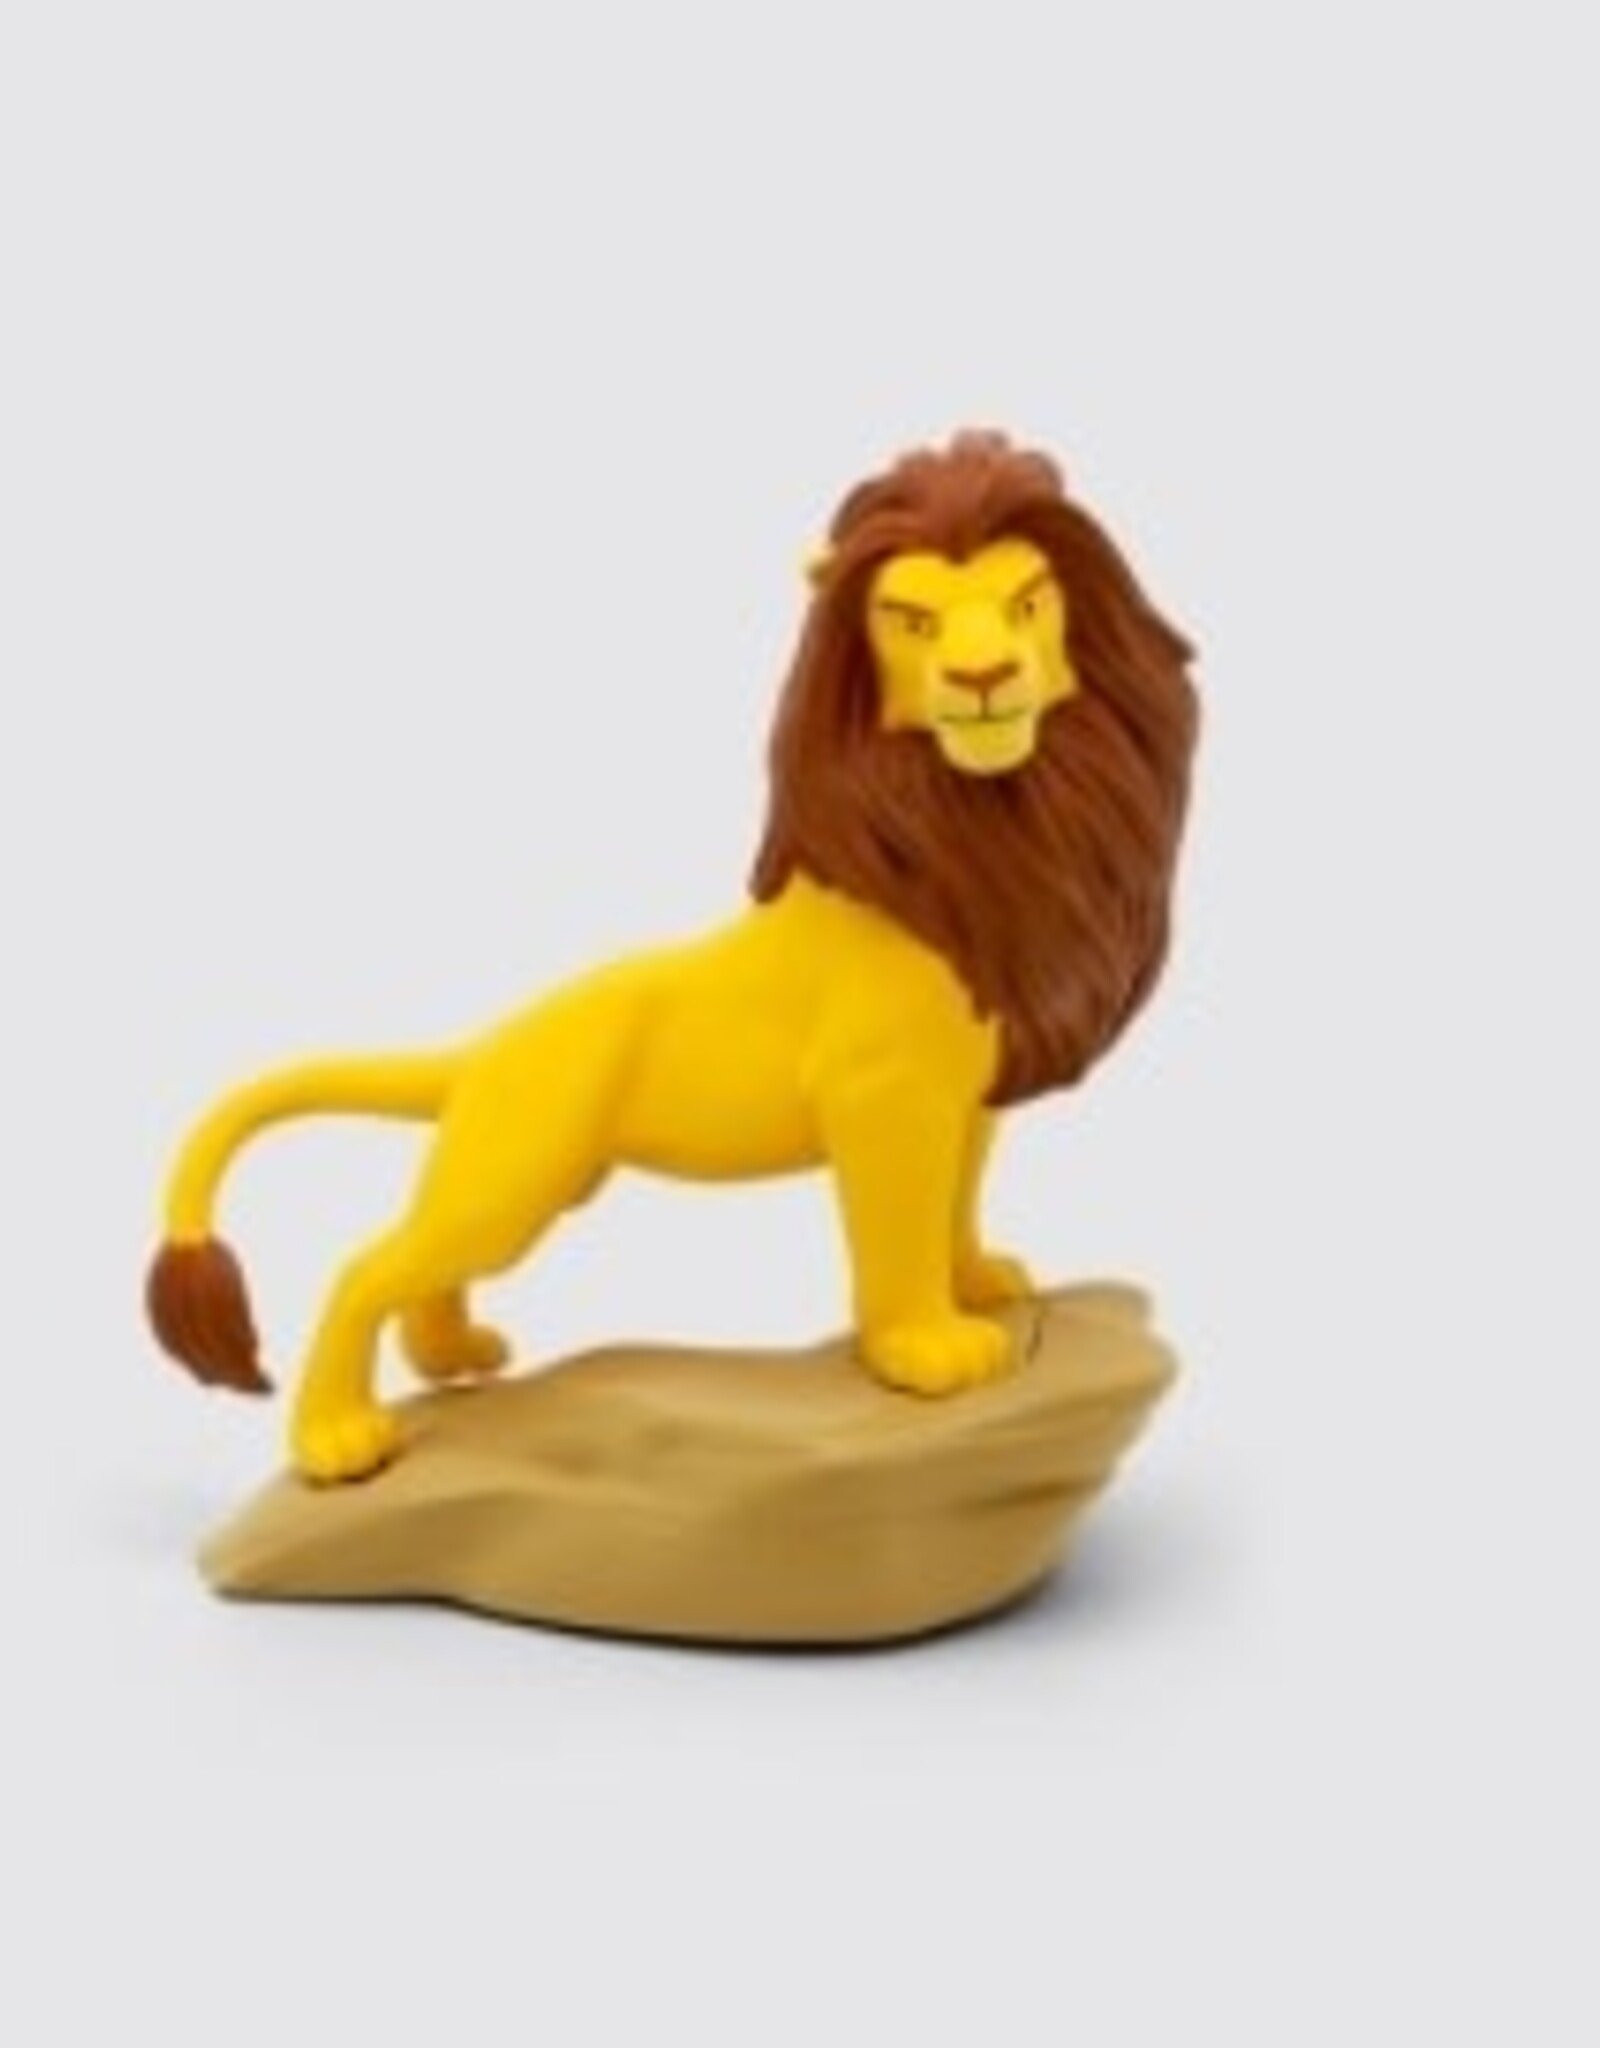 Tonies Disney - Lion King